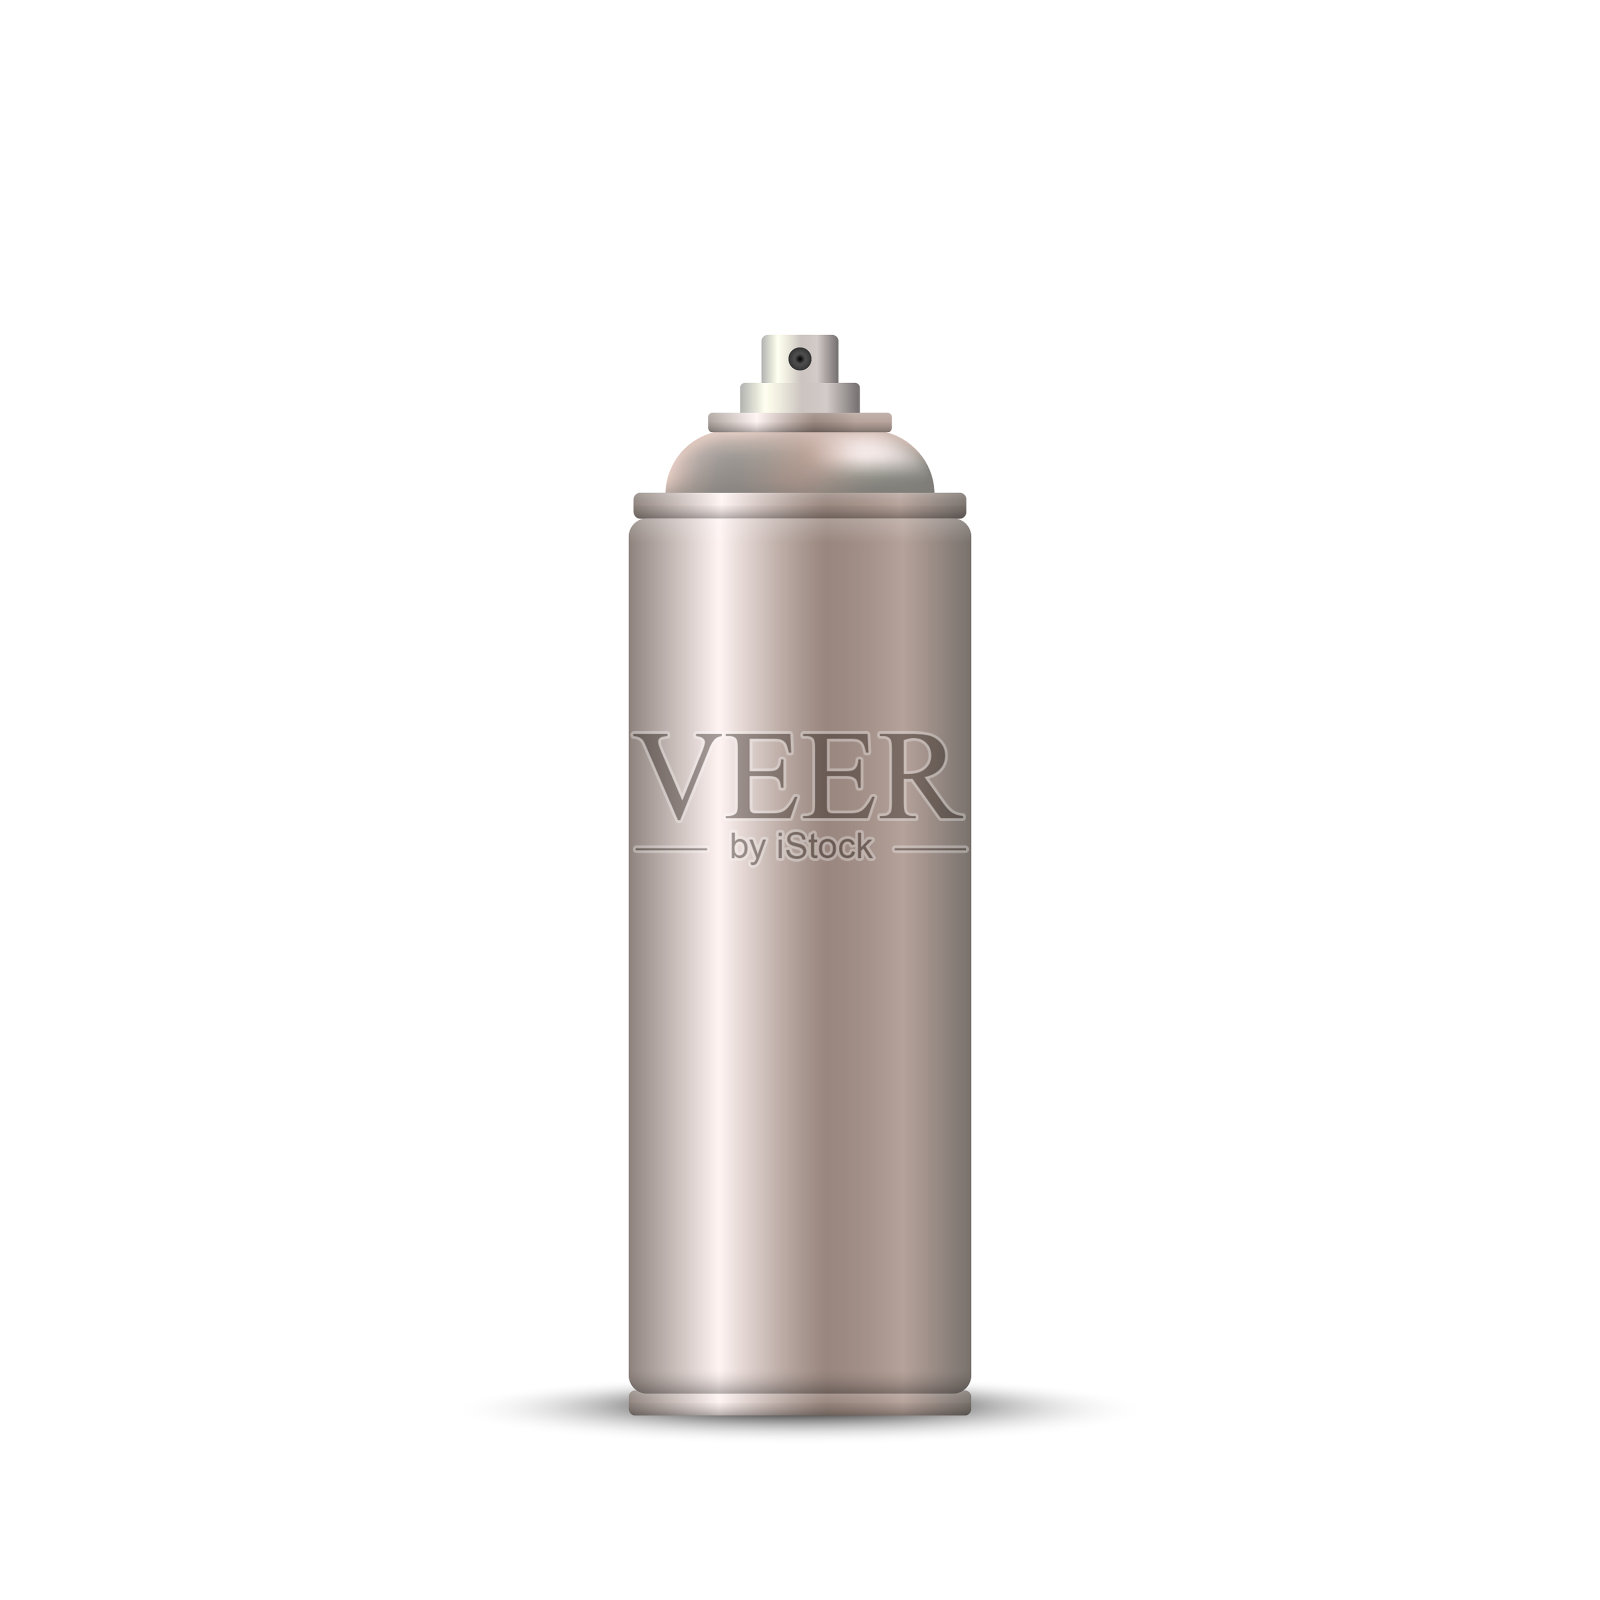 空白金属瓶喷雾剂设计元素图片